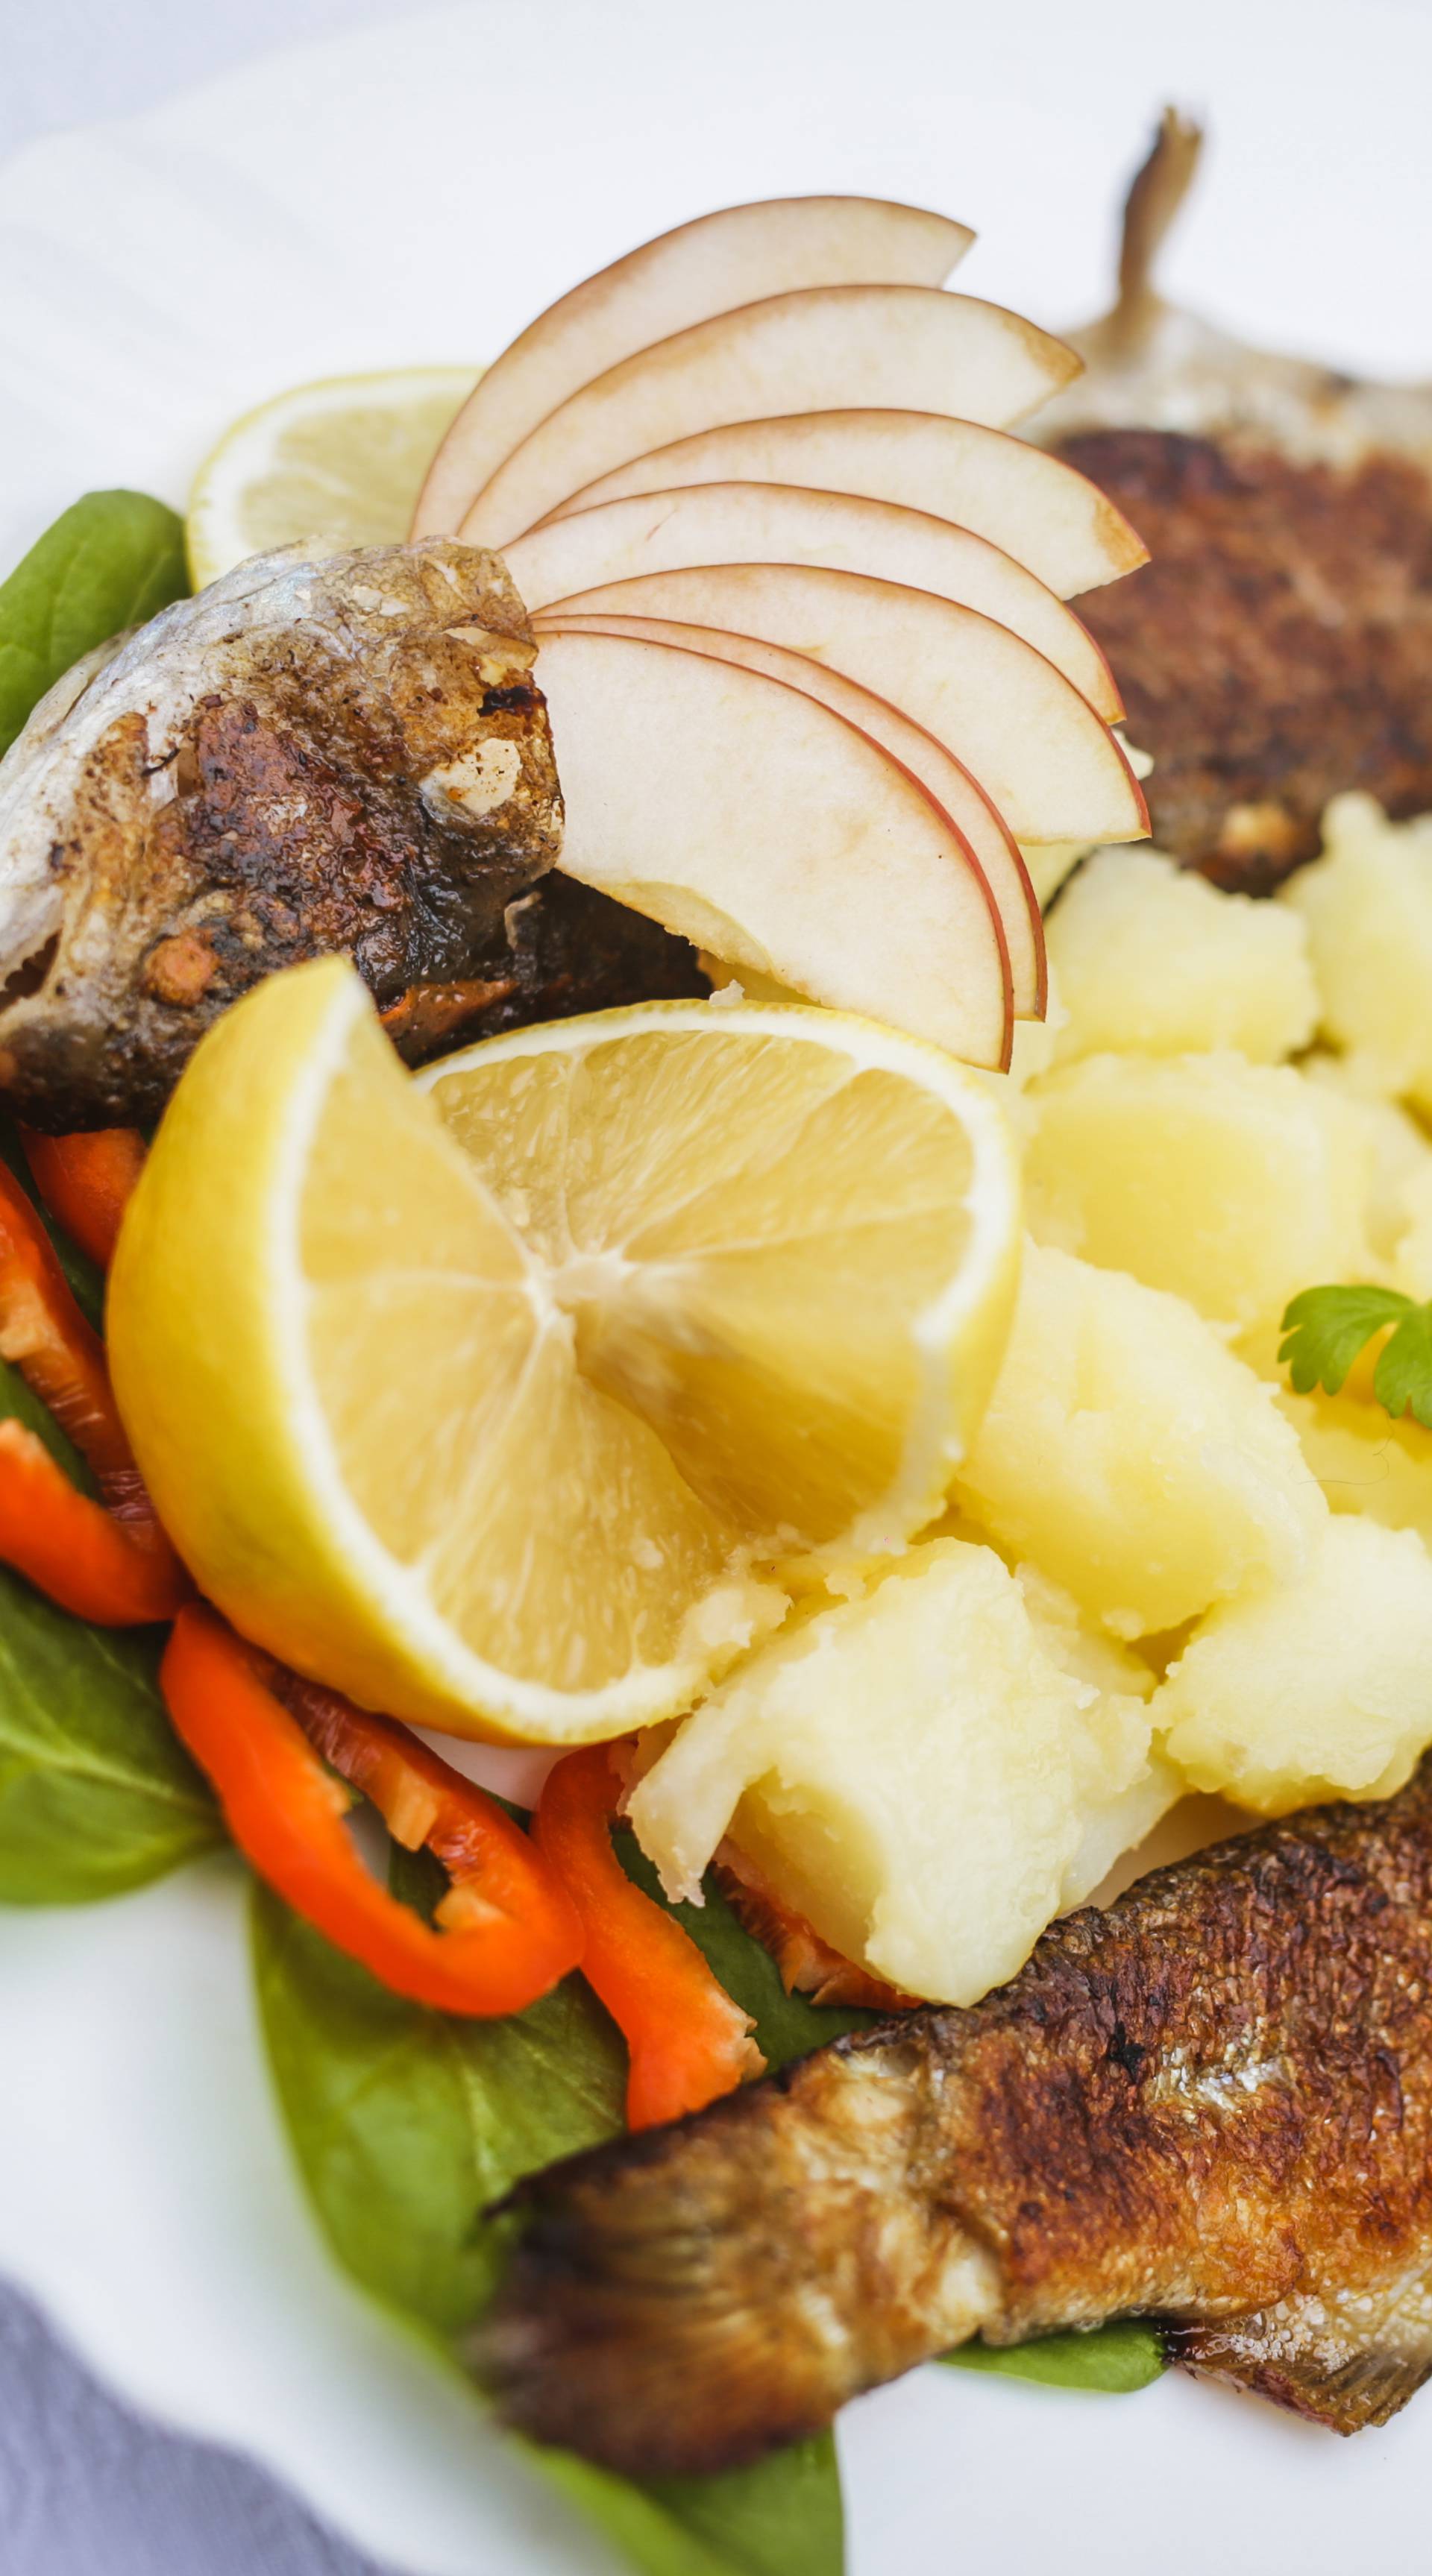 Slavonija gourmet: pet specijaliteta koje morate kušati